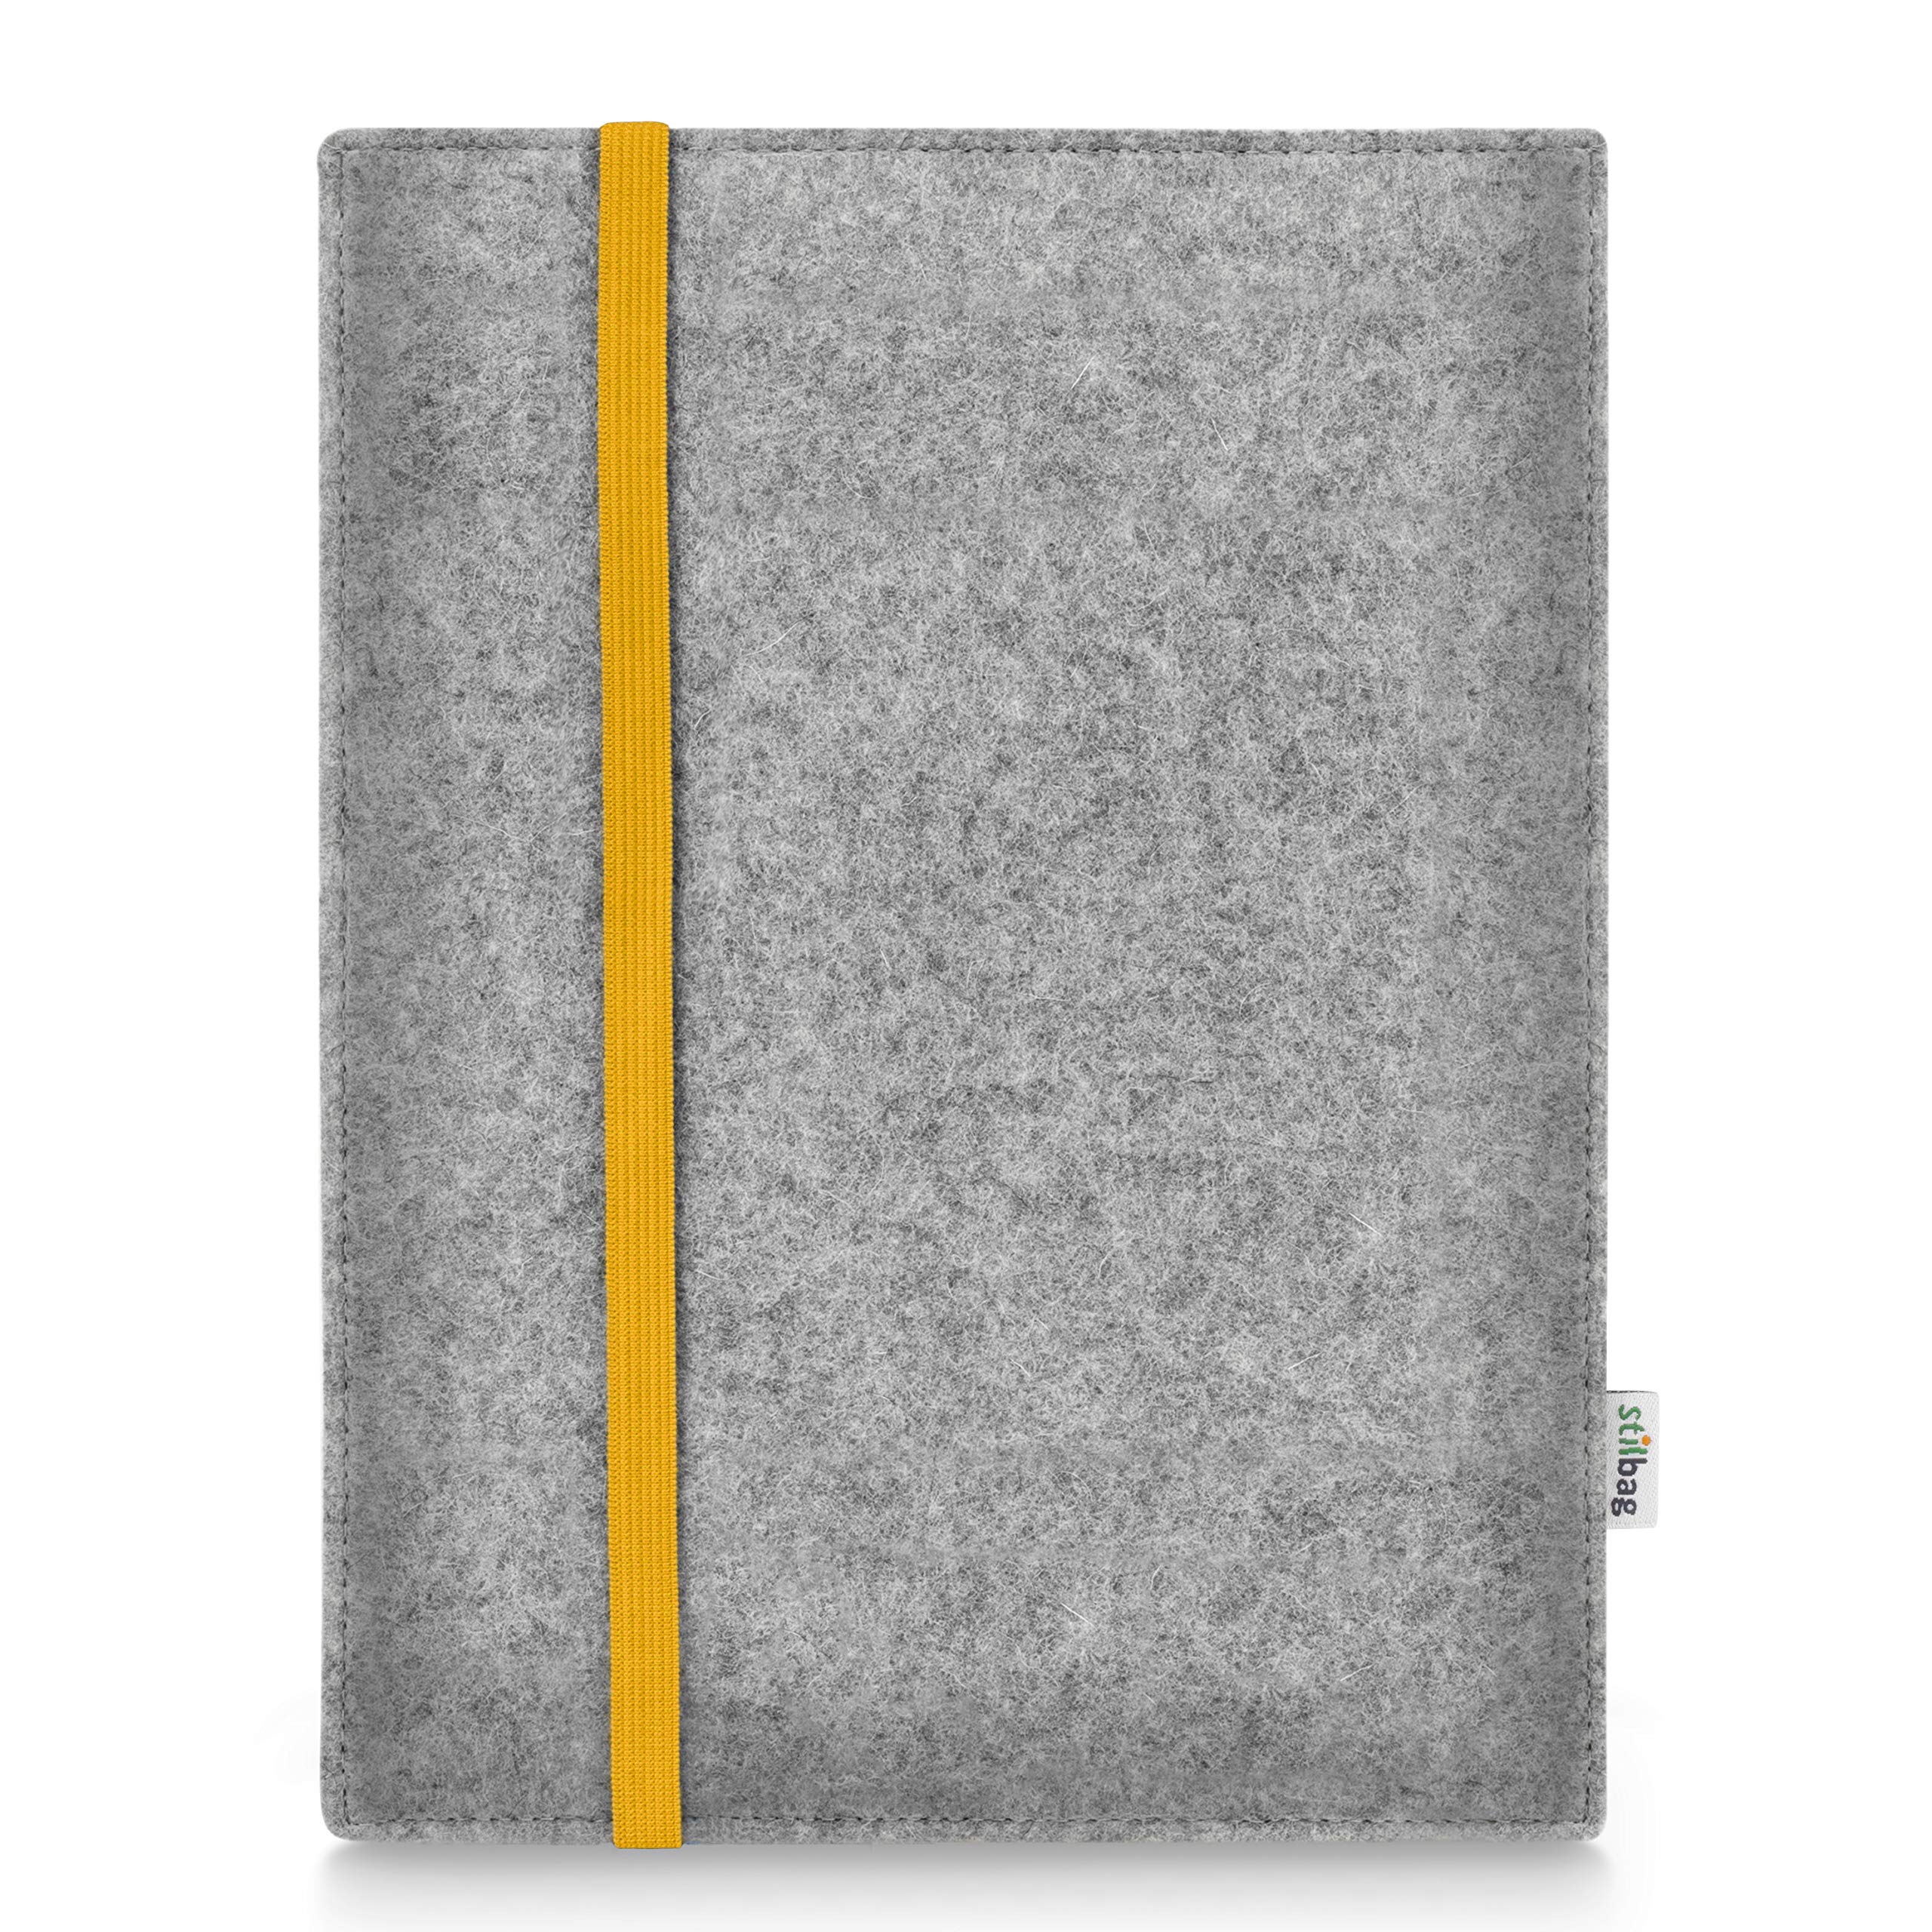 Stilbag Hülle für Huawei MediaPad M5 Lite 8 | Etui Case aus Merino Wollfilz | Modell Leon in hellgrau/gelb | Tablet Schutz-Hülle Made in Germany